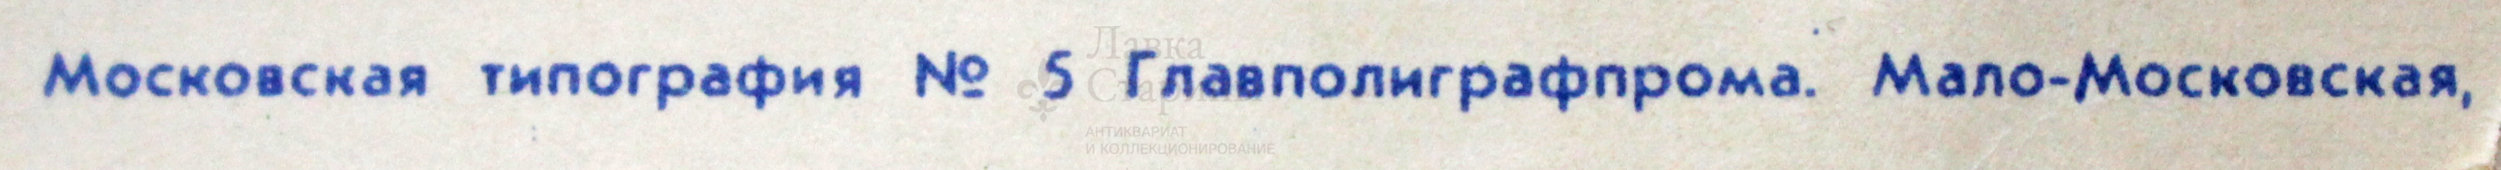 Советский агитационный плакат «Мир на земле охраняю я свято: радуясь жизни, растите, ребята!», художник И. Каленская, 1964 г.